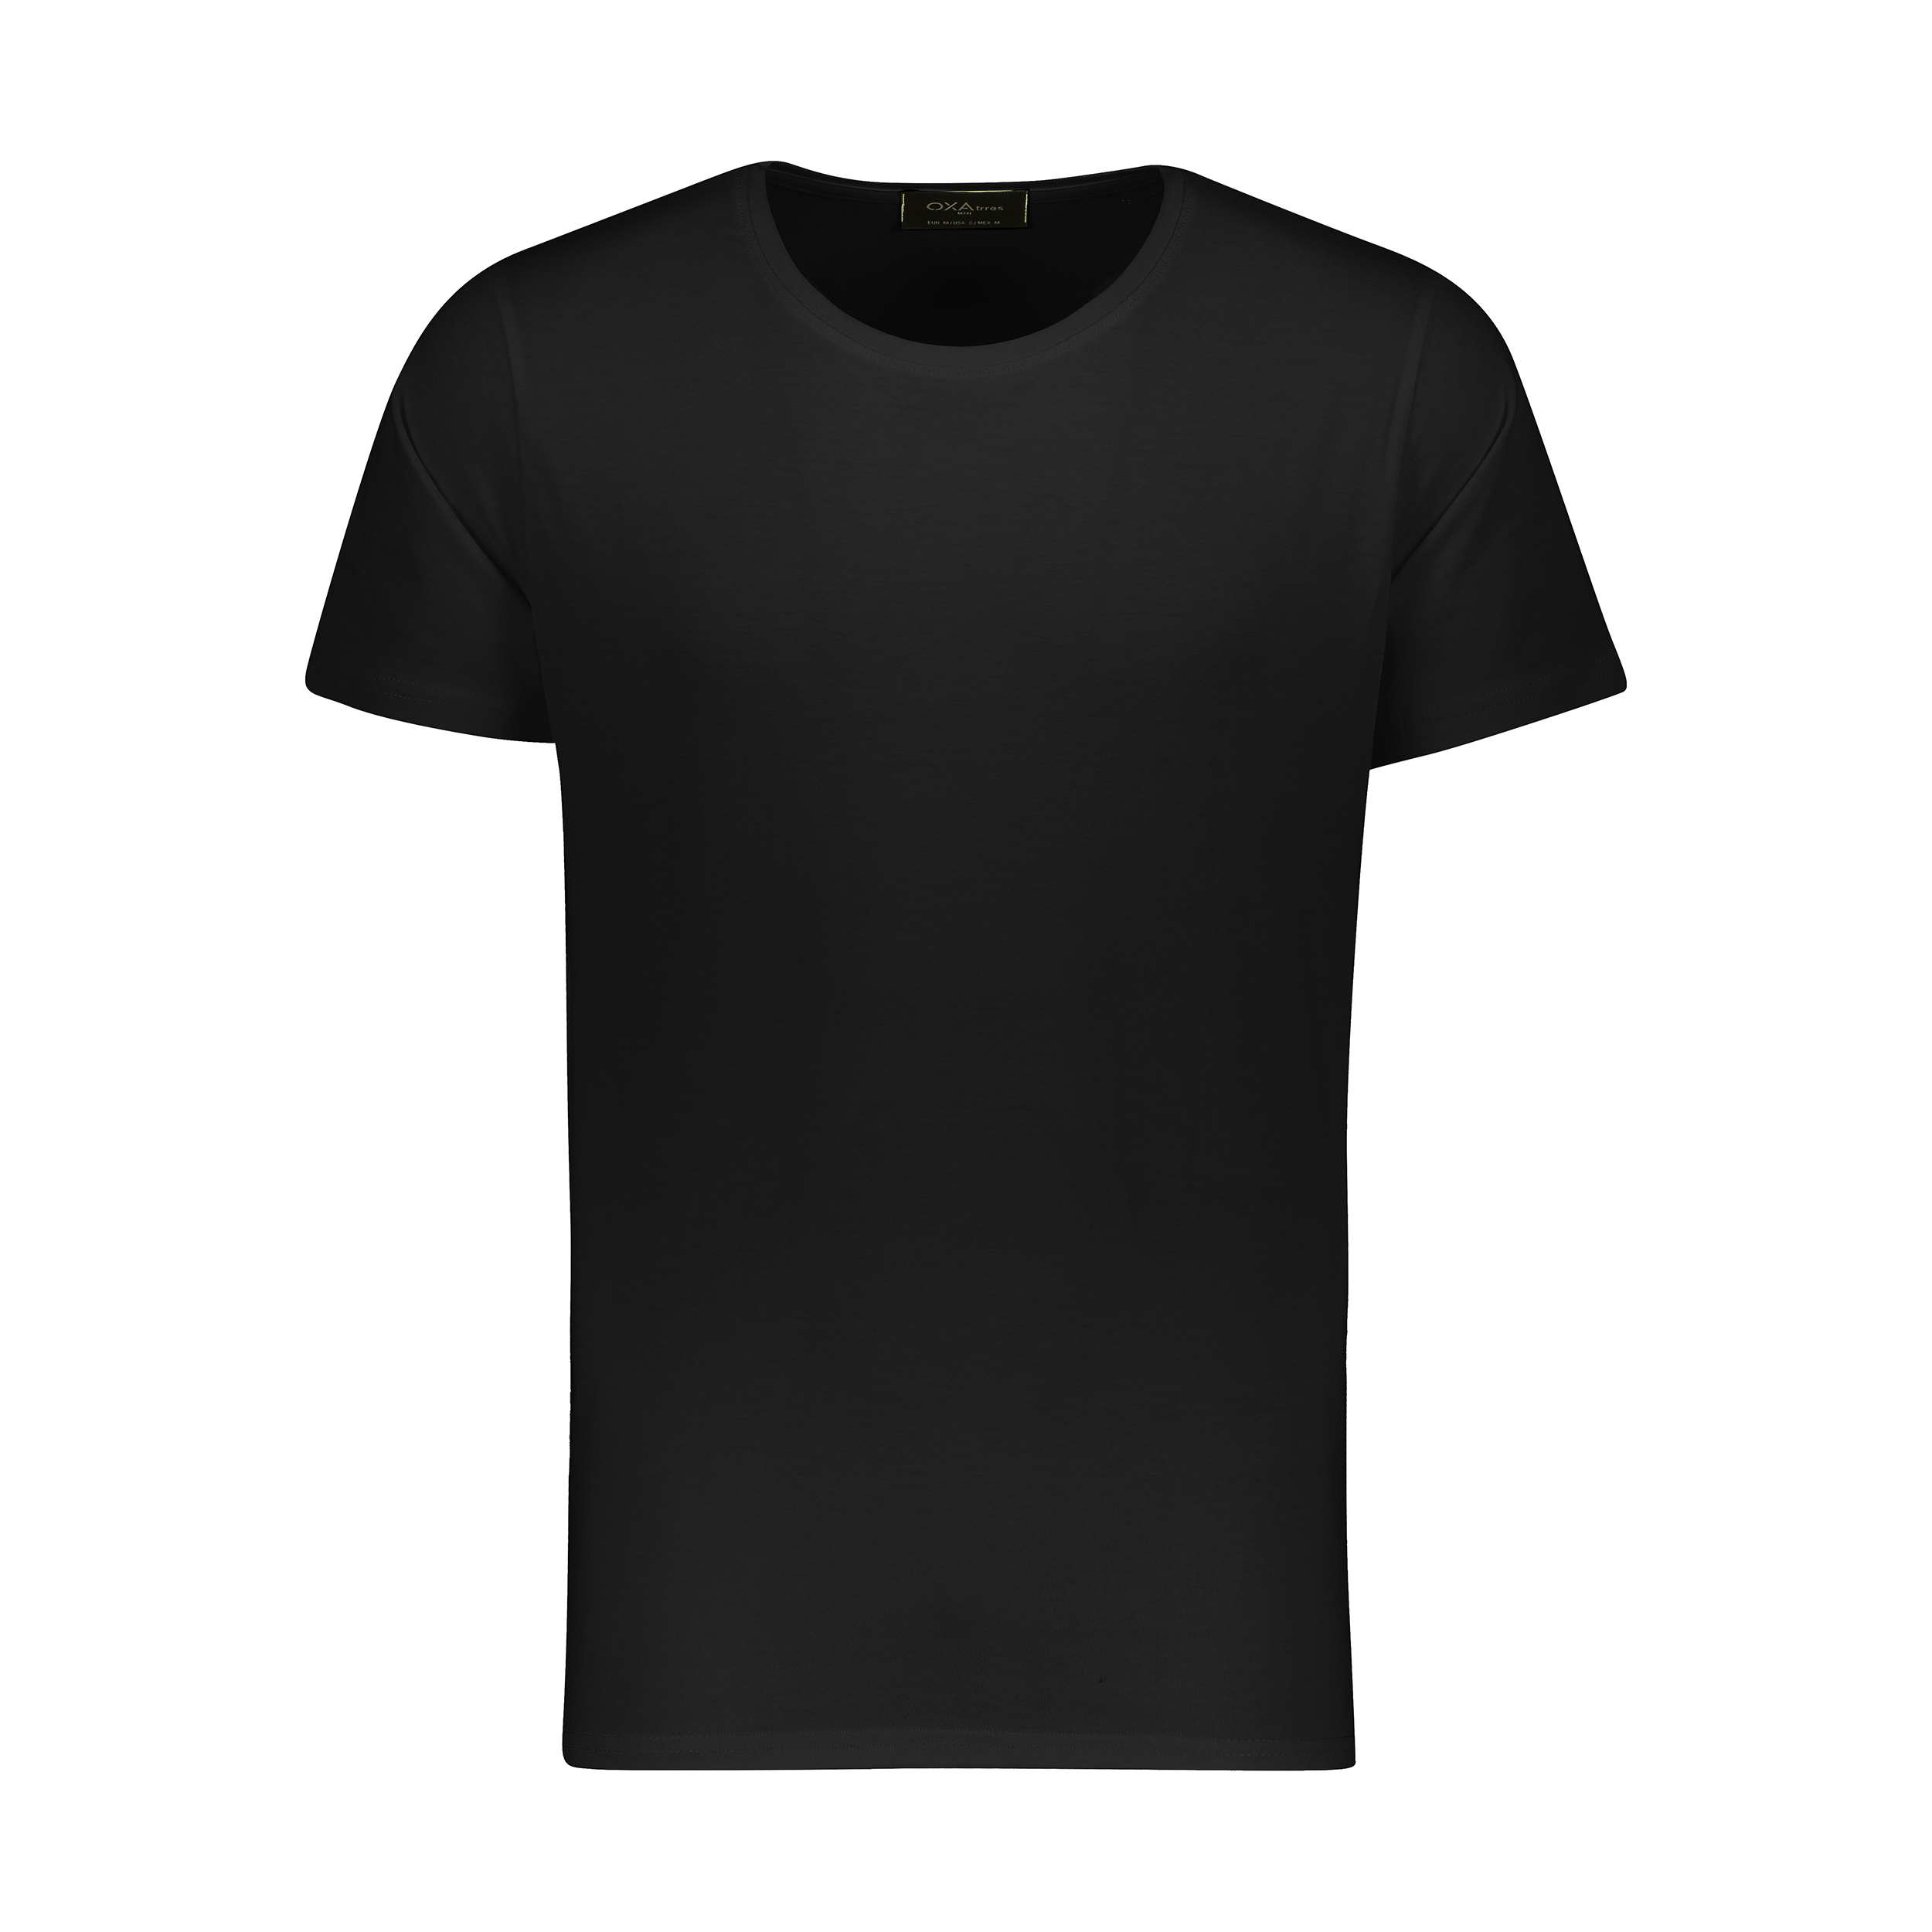 تی شرت مردانه اکزاترس مدل P032001002370100-002